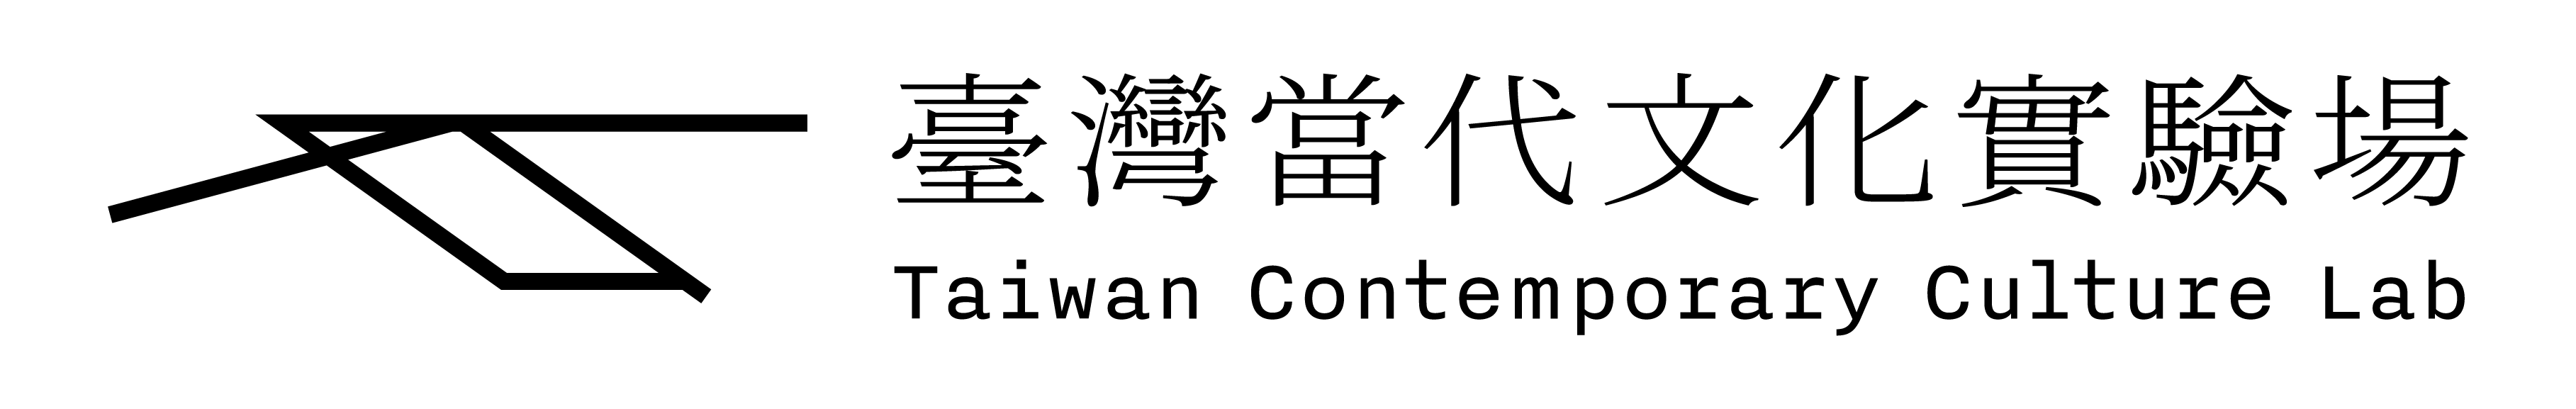 空總臺灣當代文化實驗場Logo